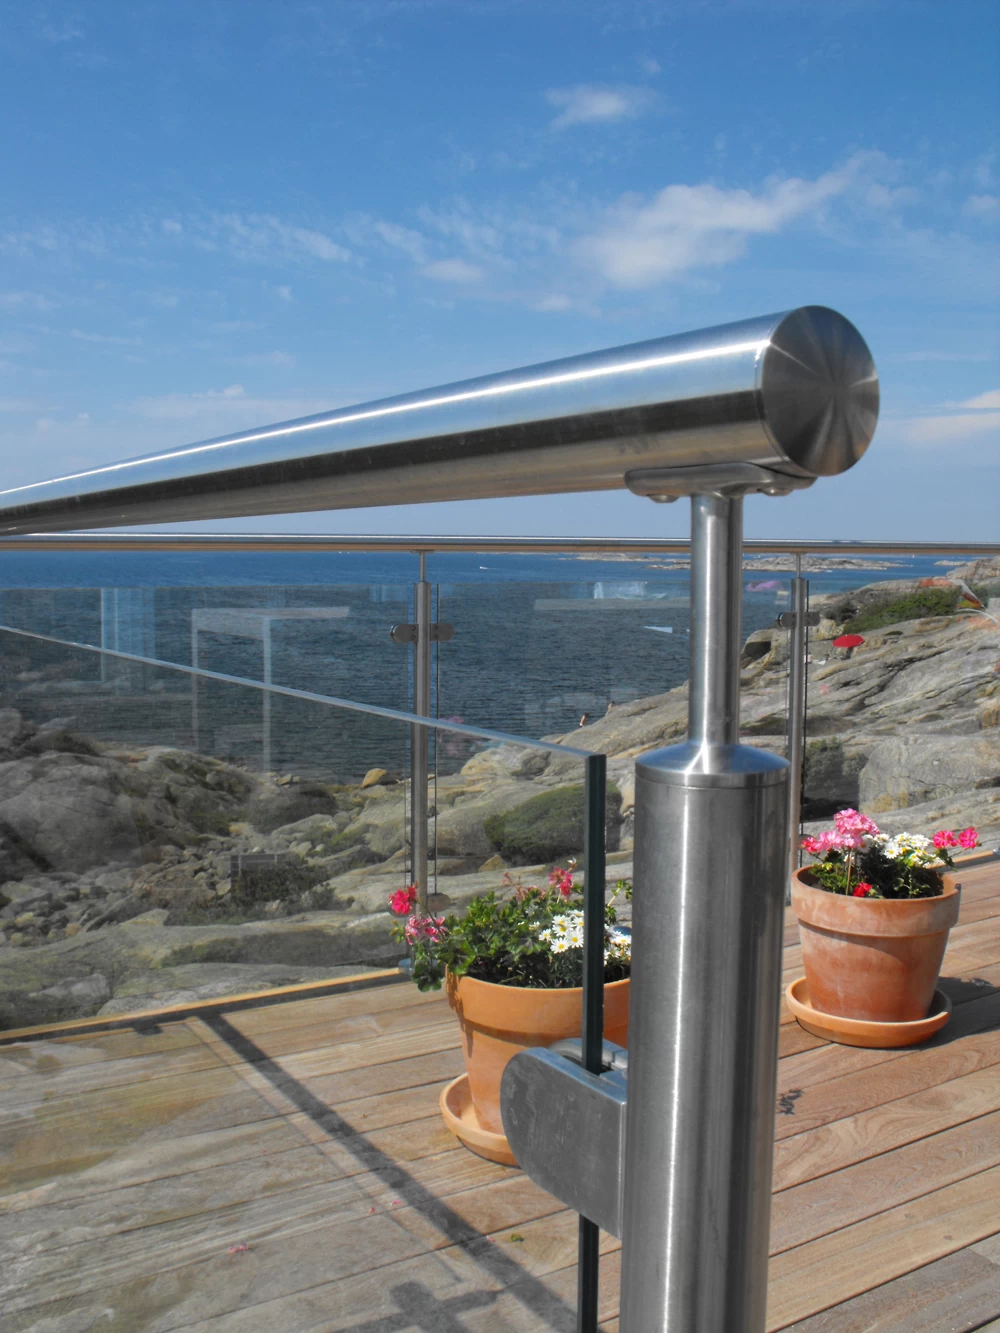 stainless steel balustrade post glass railing modern design for balcony railing